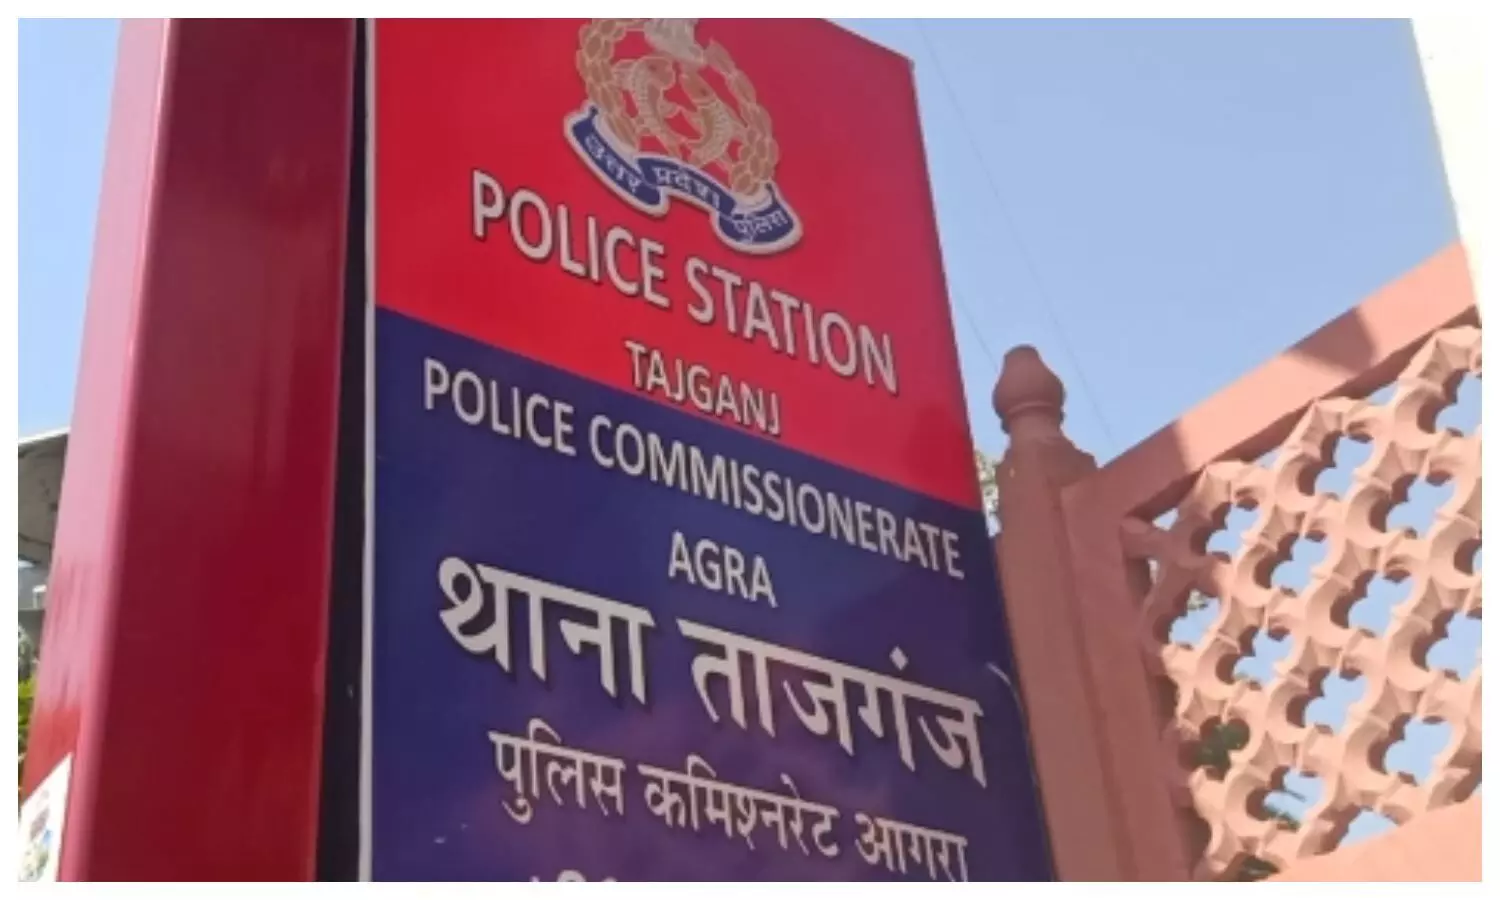 Tajganj Police Station Agra